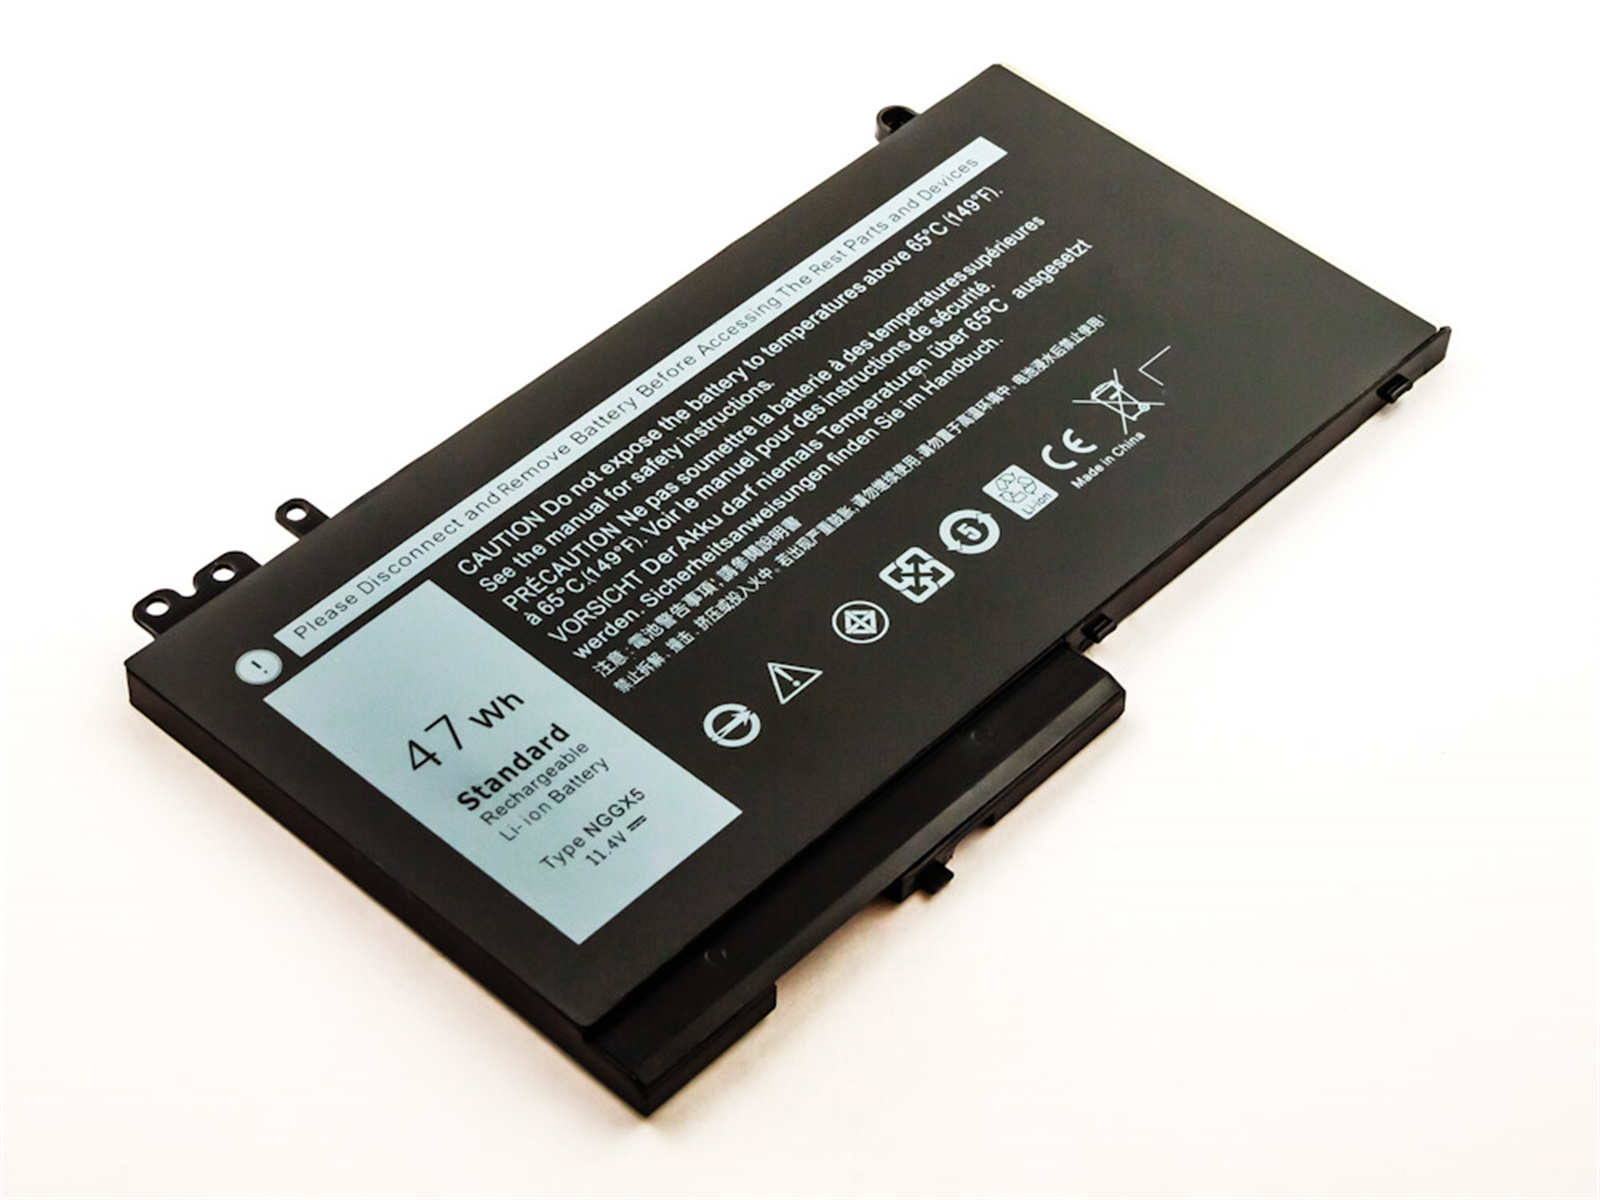 AGI Akku kompatibel mit Dell Latitude Notebookakku, Li-Pol, Volt, mAh 12 11.1 5000 3400 Li-Pol